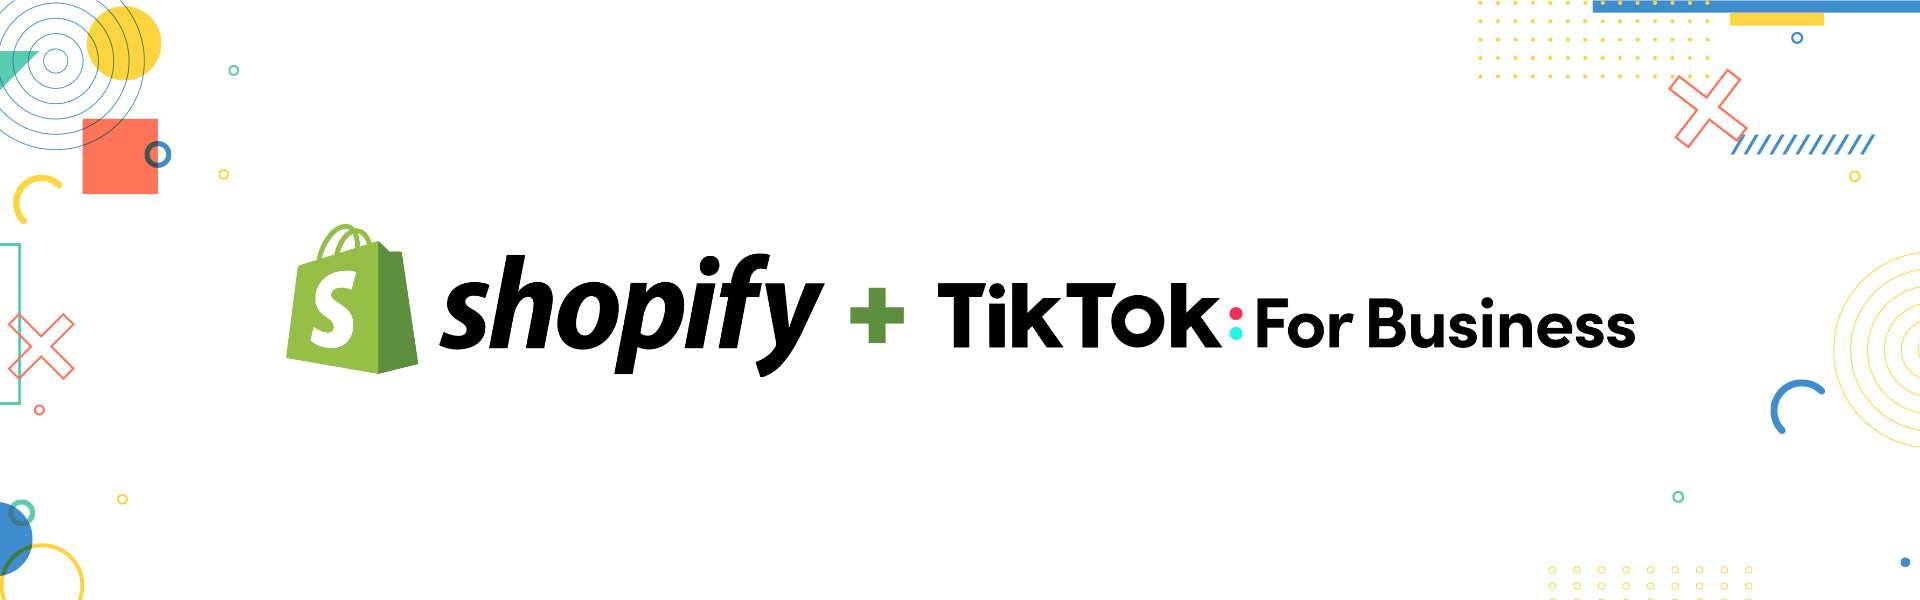 TikTok Partners with Shopify